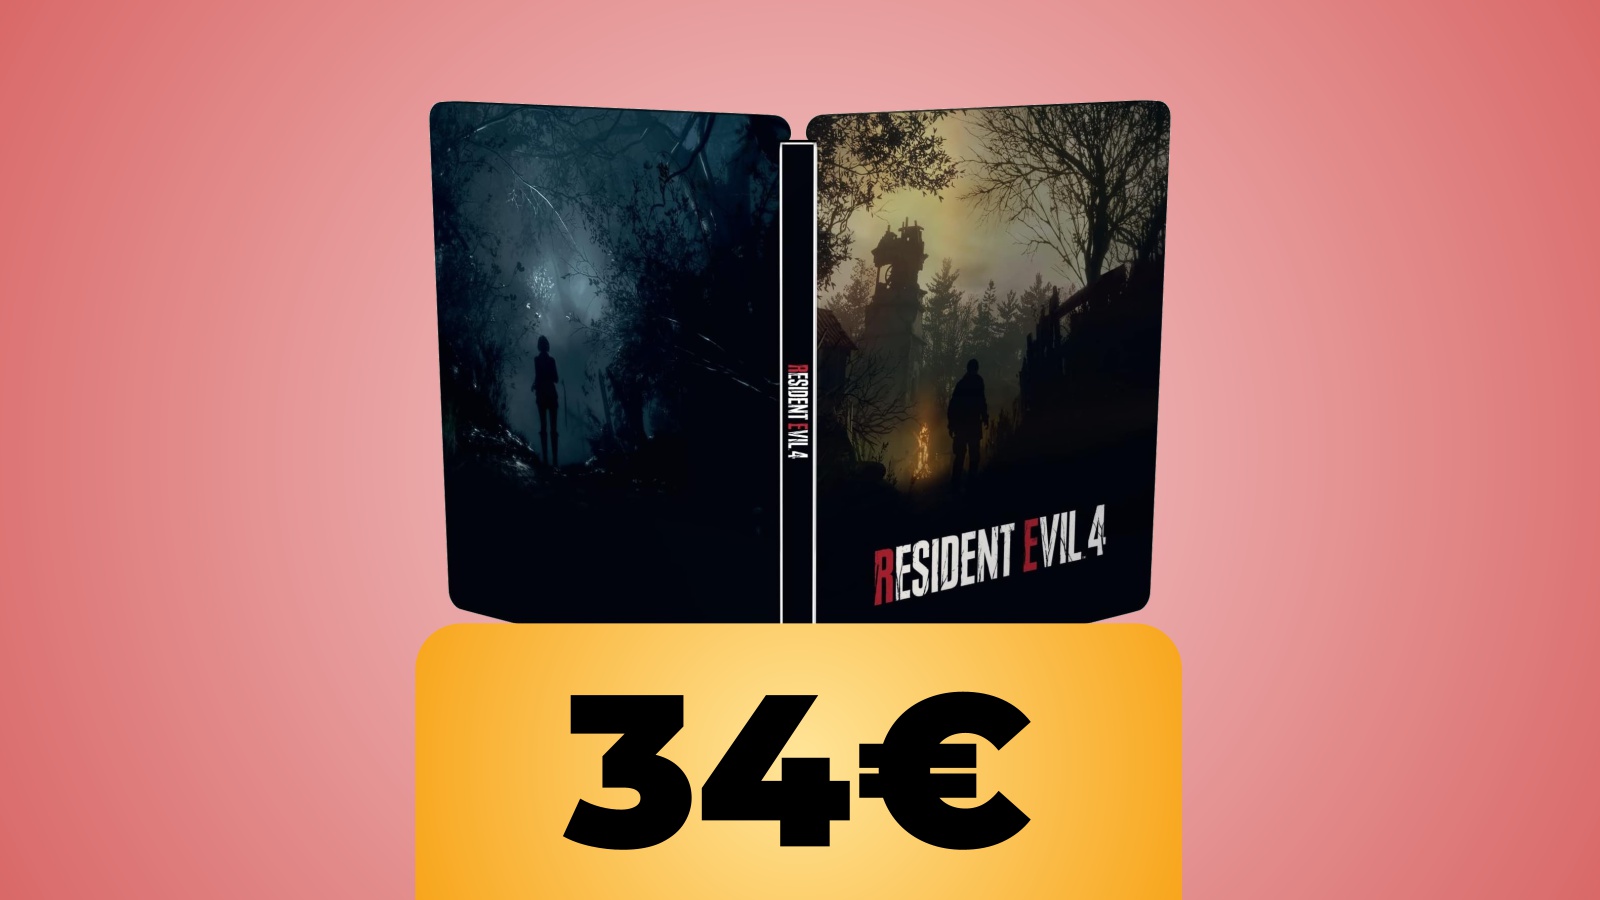 Resident Evil 4 Remake versione Steelbook in sconto su Amazon Italia al prezzo minimo storico